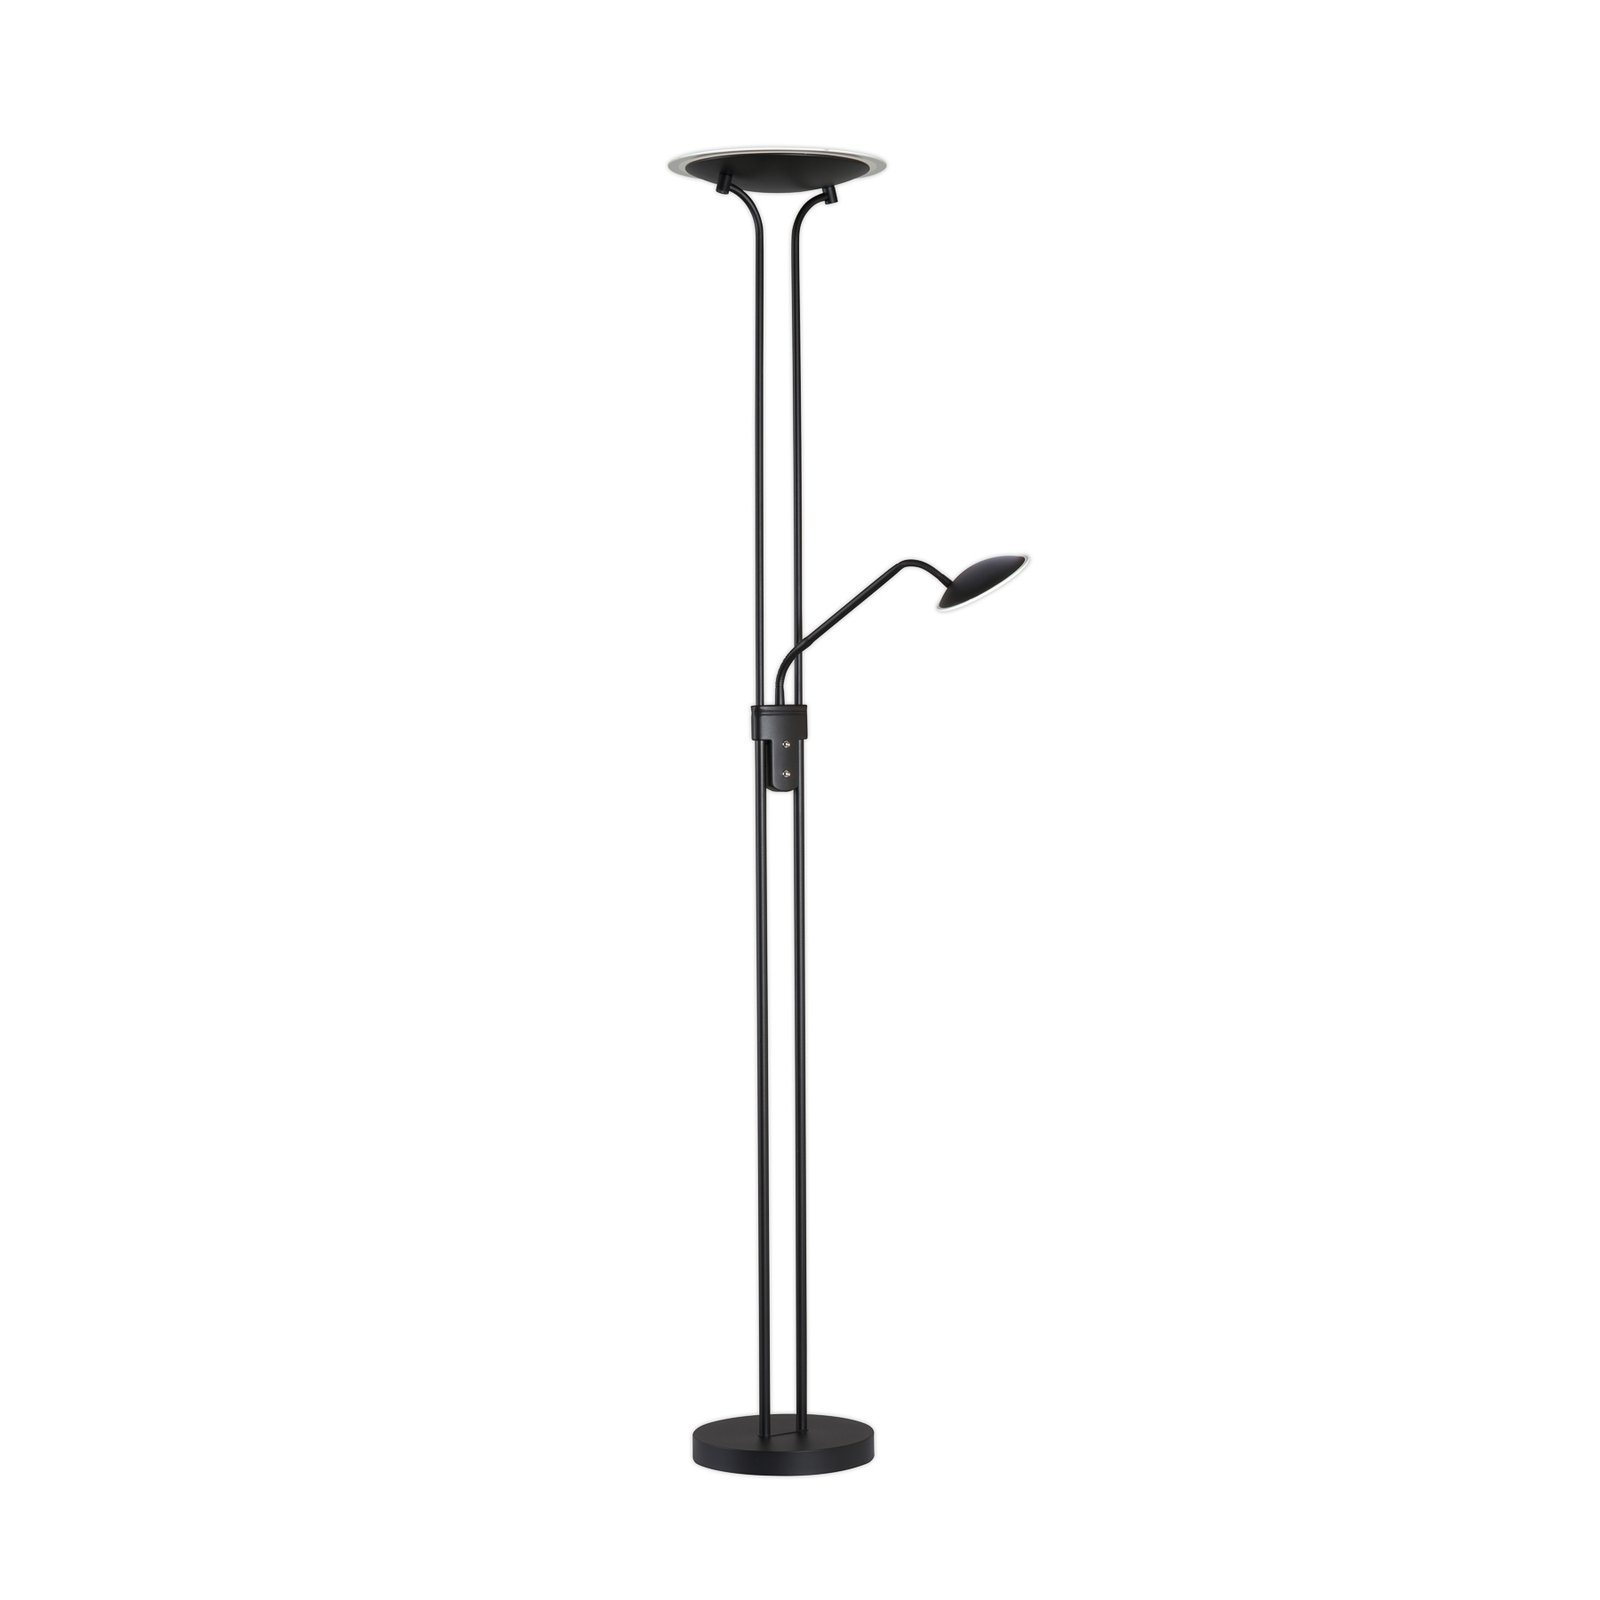 LED stojacia lampa Tallri, čierna, 180 cm, 2 svetlá, kov, CCT